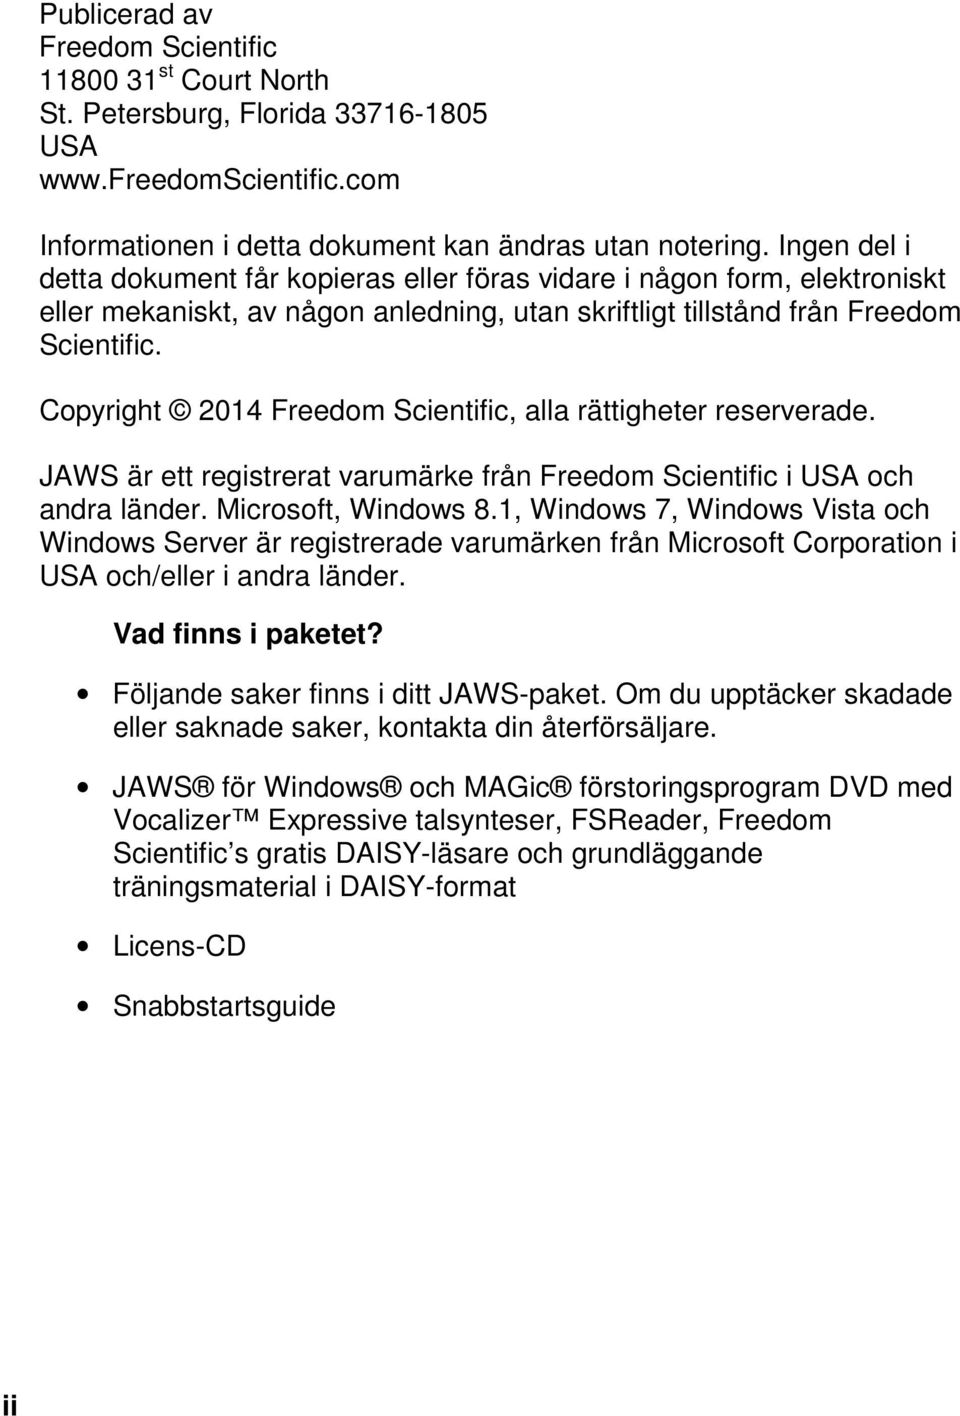 Copyright 2014 Freedom Scientific, alla rättigheter reserverade. JAWS är ett registrerat varumärke från Freedom Scientific i USA och andra länder. Microsoft, Windows 8.